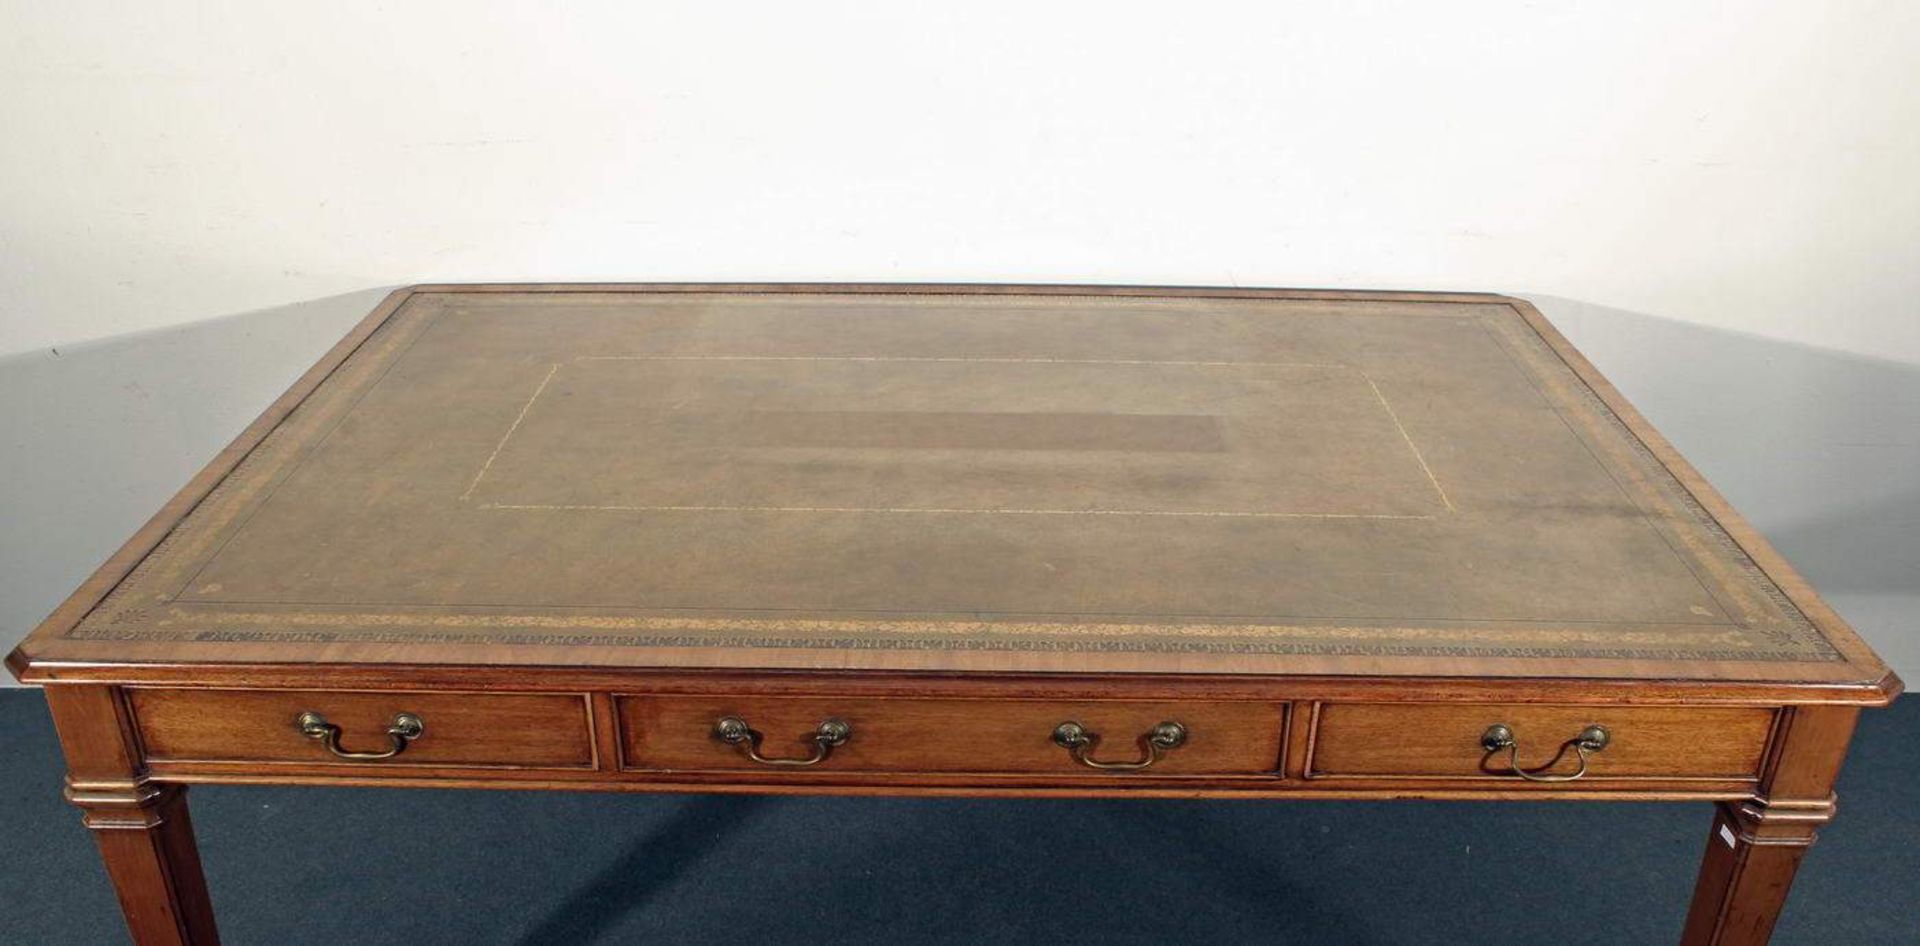 Schreibtisch, England, um 1900, drei Schübe, Rückseite drei Blendschübe, eingelassene Lederplatte, - Bild 2 aus 2